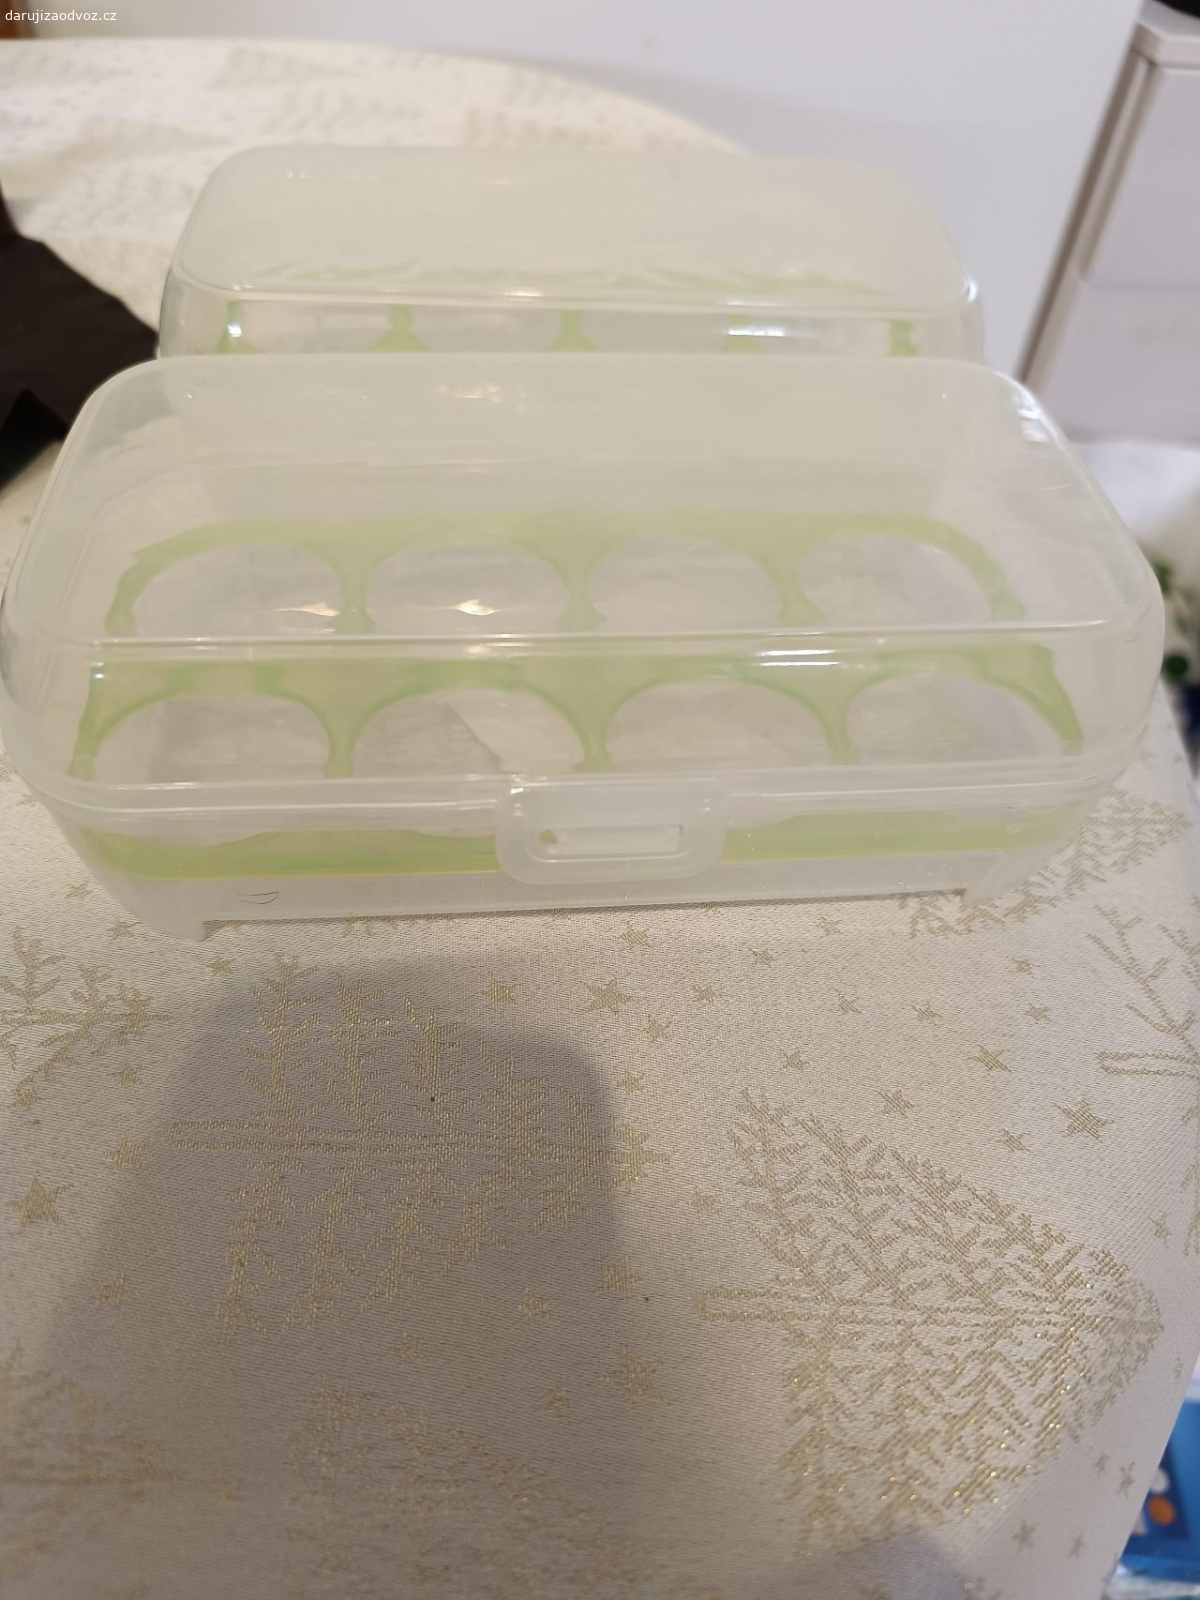 krabičky na vajíčka. dvě krabičky na vajíčka